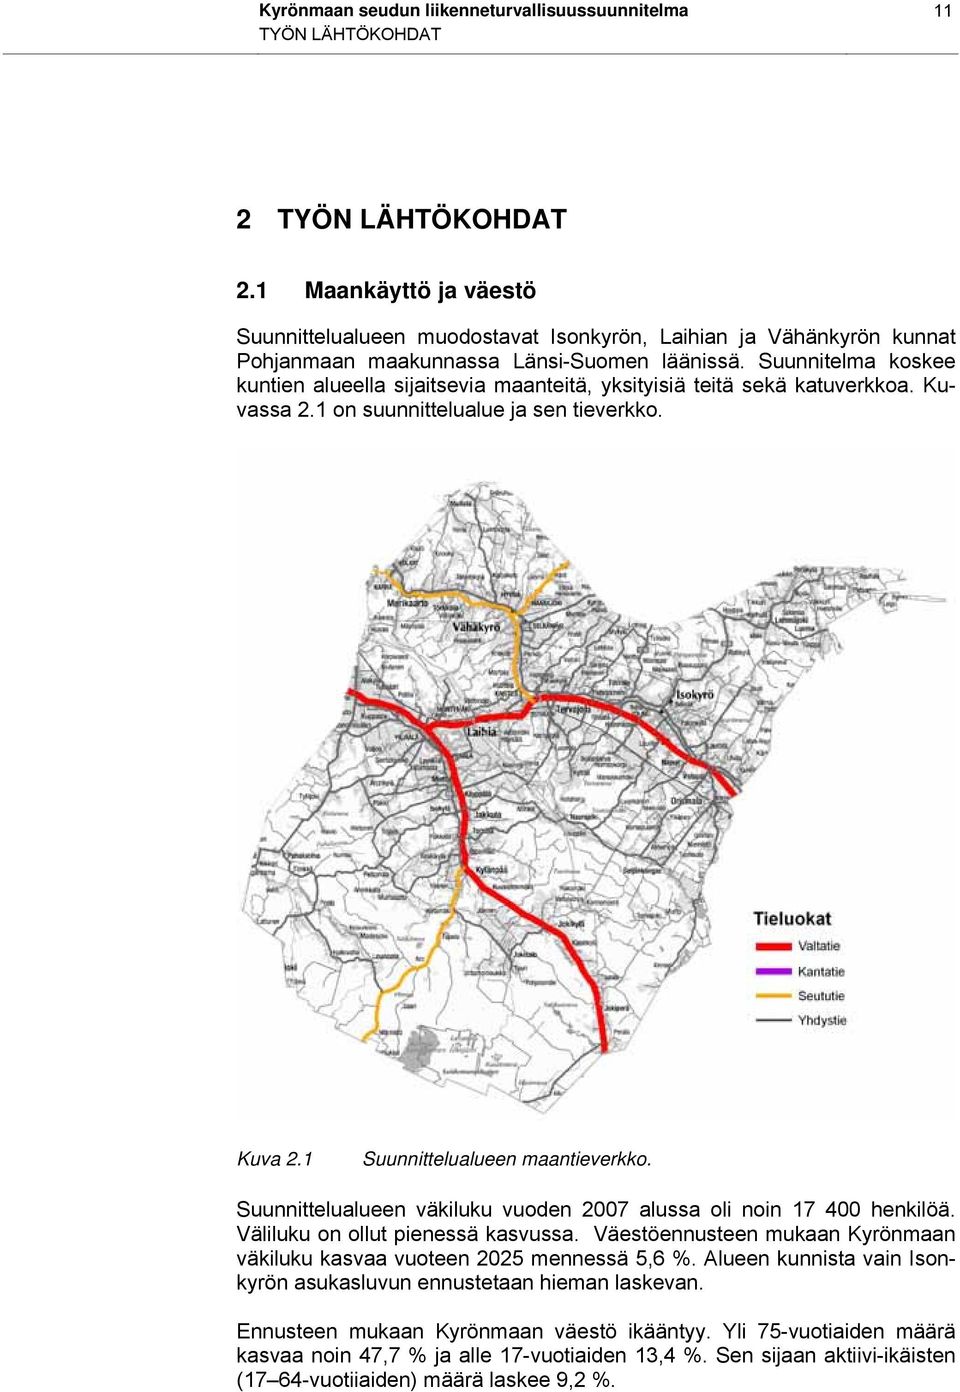 Suunnitelma koskee kuntien alueella sijaitsevia maanteitä, yksityisiä teitä sekä katuverkkoa. Kuvassa 2.1 on suunnittelualue ja sen tieverkko. Kuva 2.1 Suunnittelualueen maantieverkko.